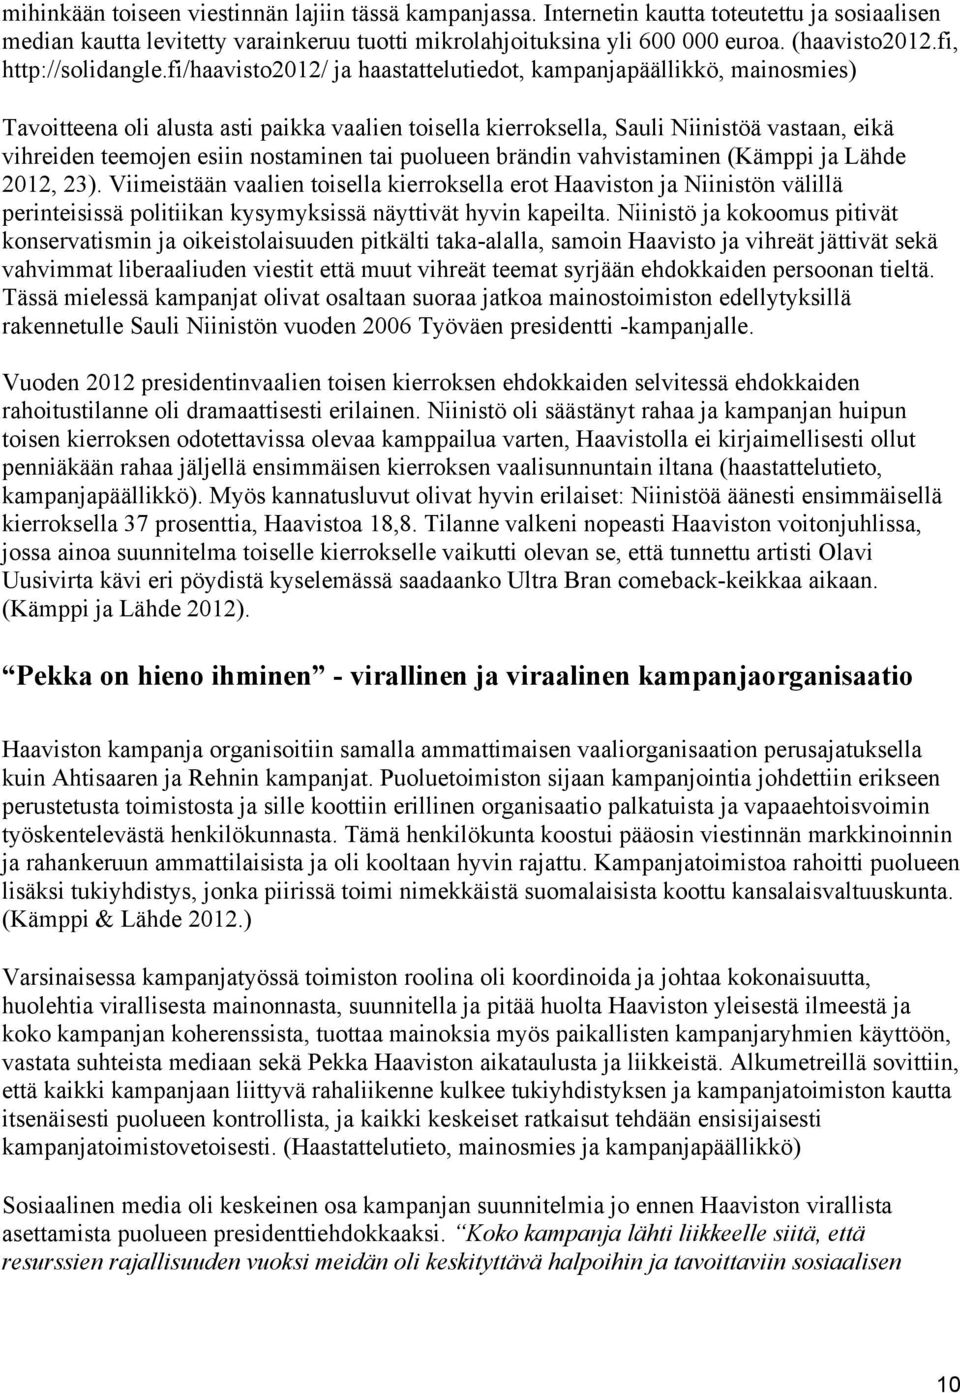 fi/haavisto2012/ ja haastattelutiedot, kampanjapäällikkö, mainosmies) Tavoitteena oli alusta asti paikka vaalien toisella kierroksella, Sauli Niinistöä vastaan, eikä vihreiden teemojen esiin